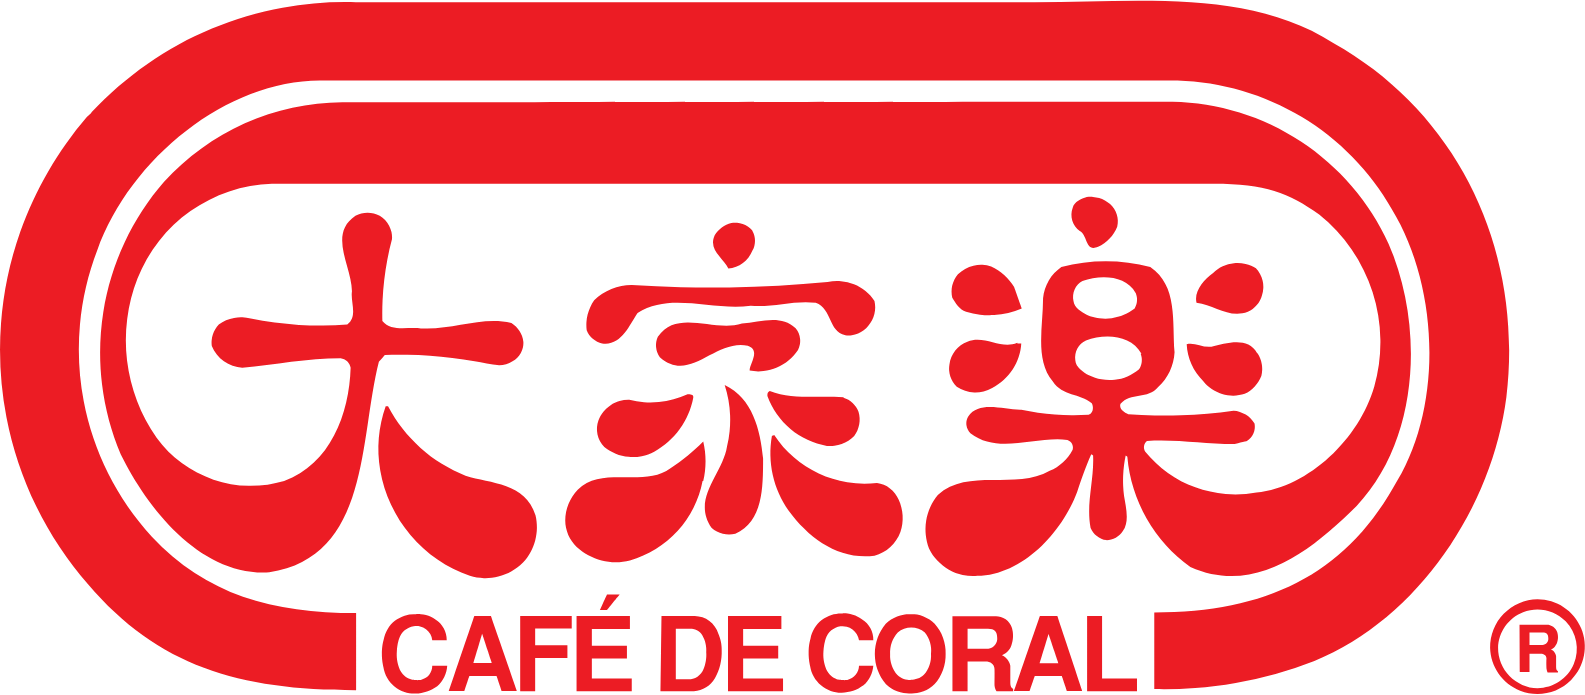 Café de Coral logo large (transparent PNG)